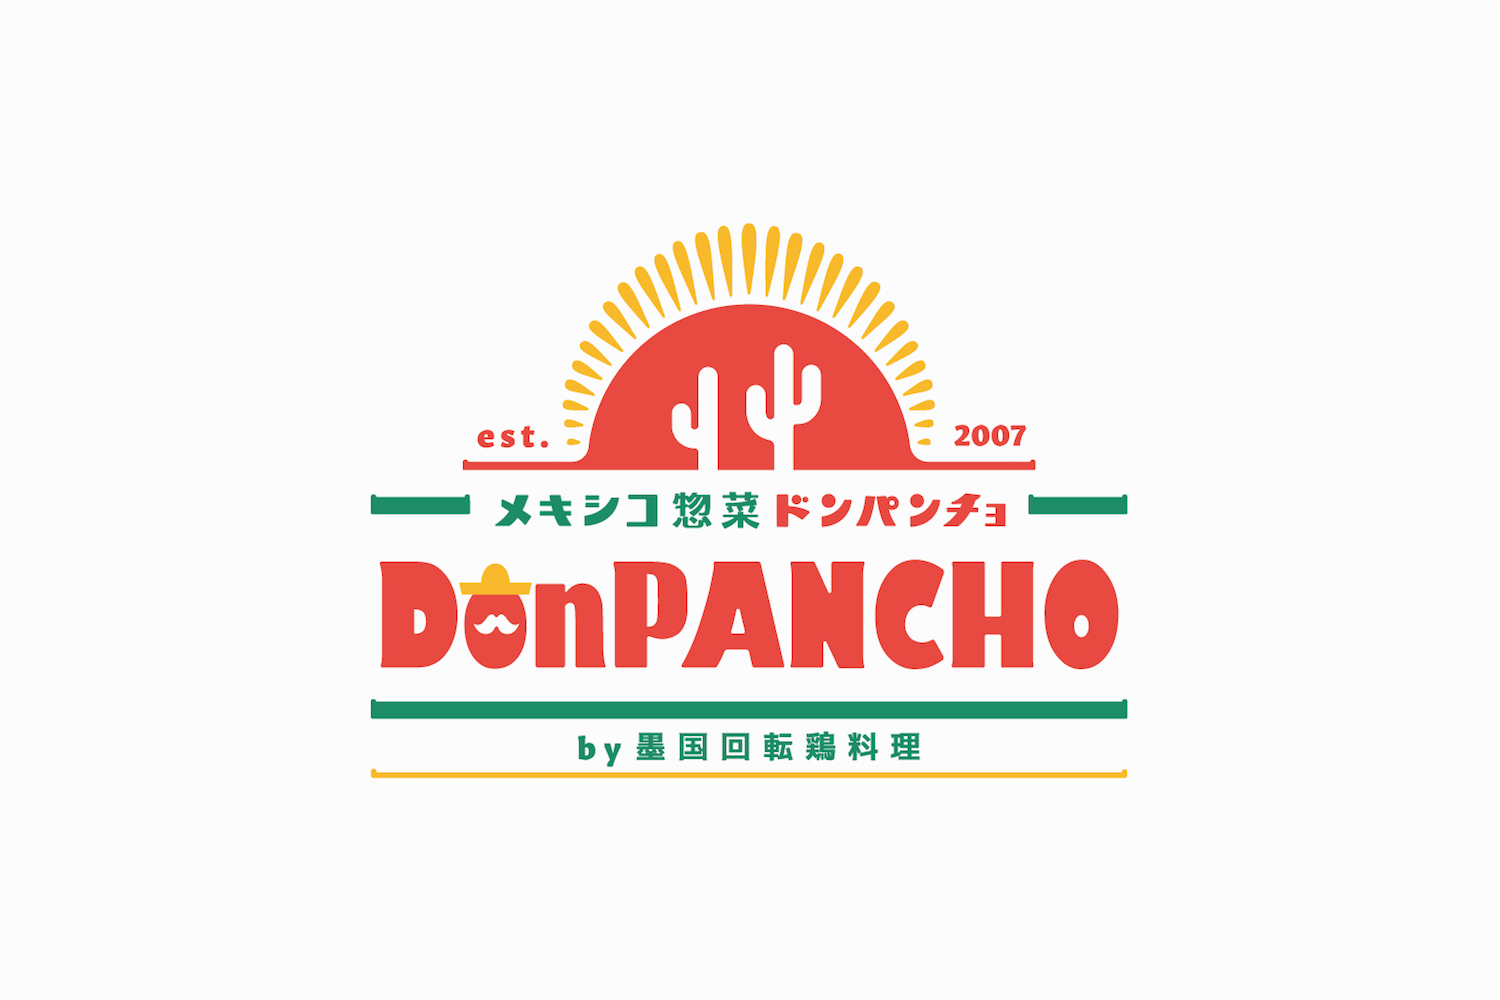 メキシコ惣菜専門店のロゴマークデザイン_メキシコ惣菜DonPANCHO